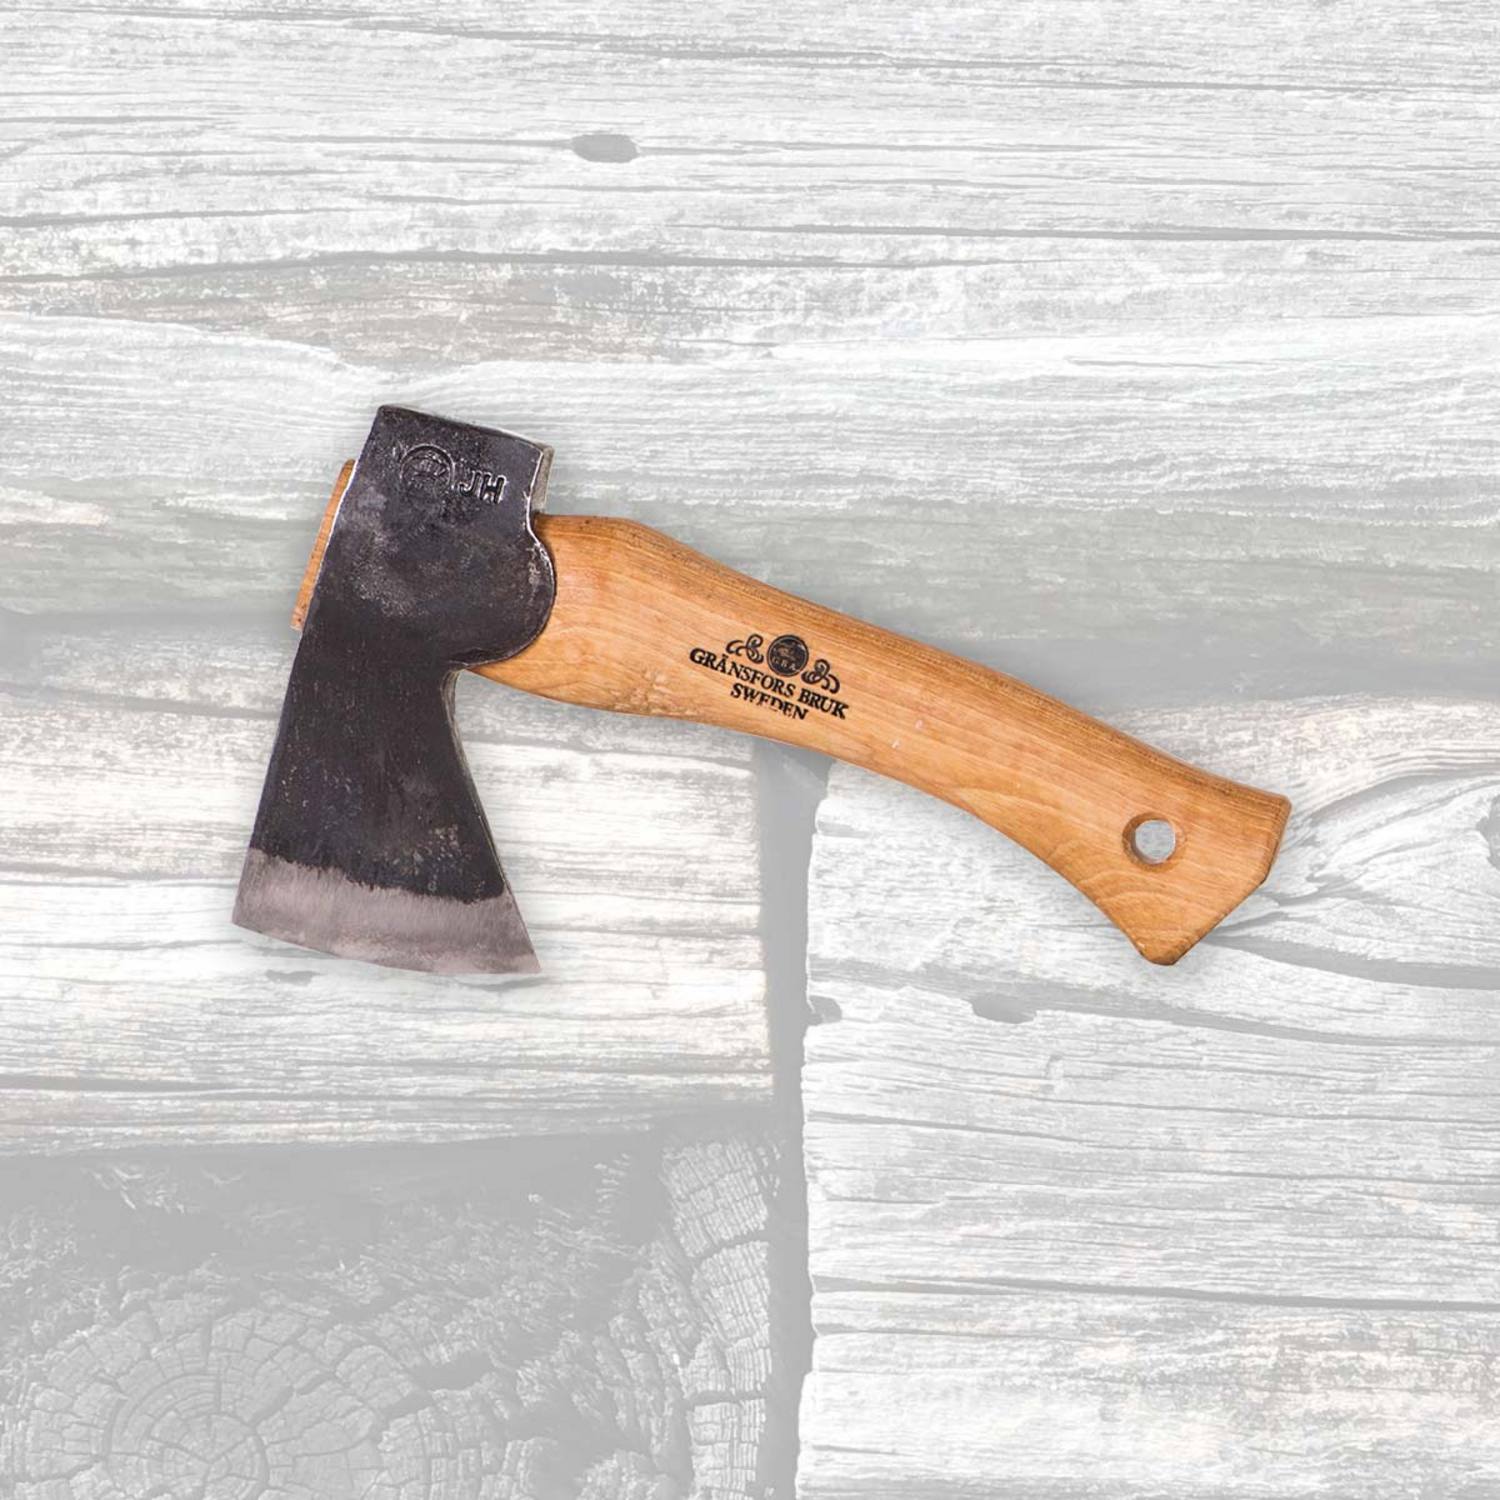 Small axe/hatchet 